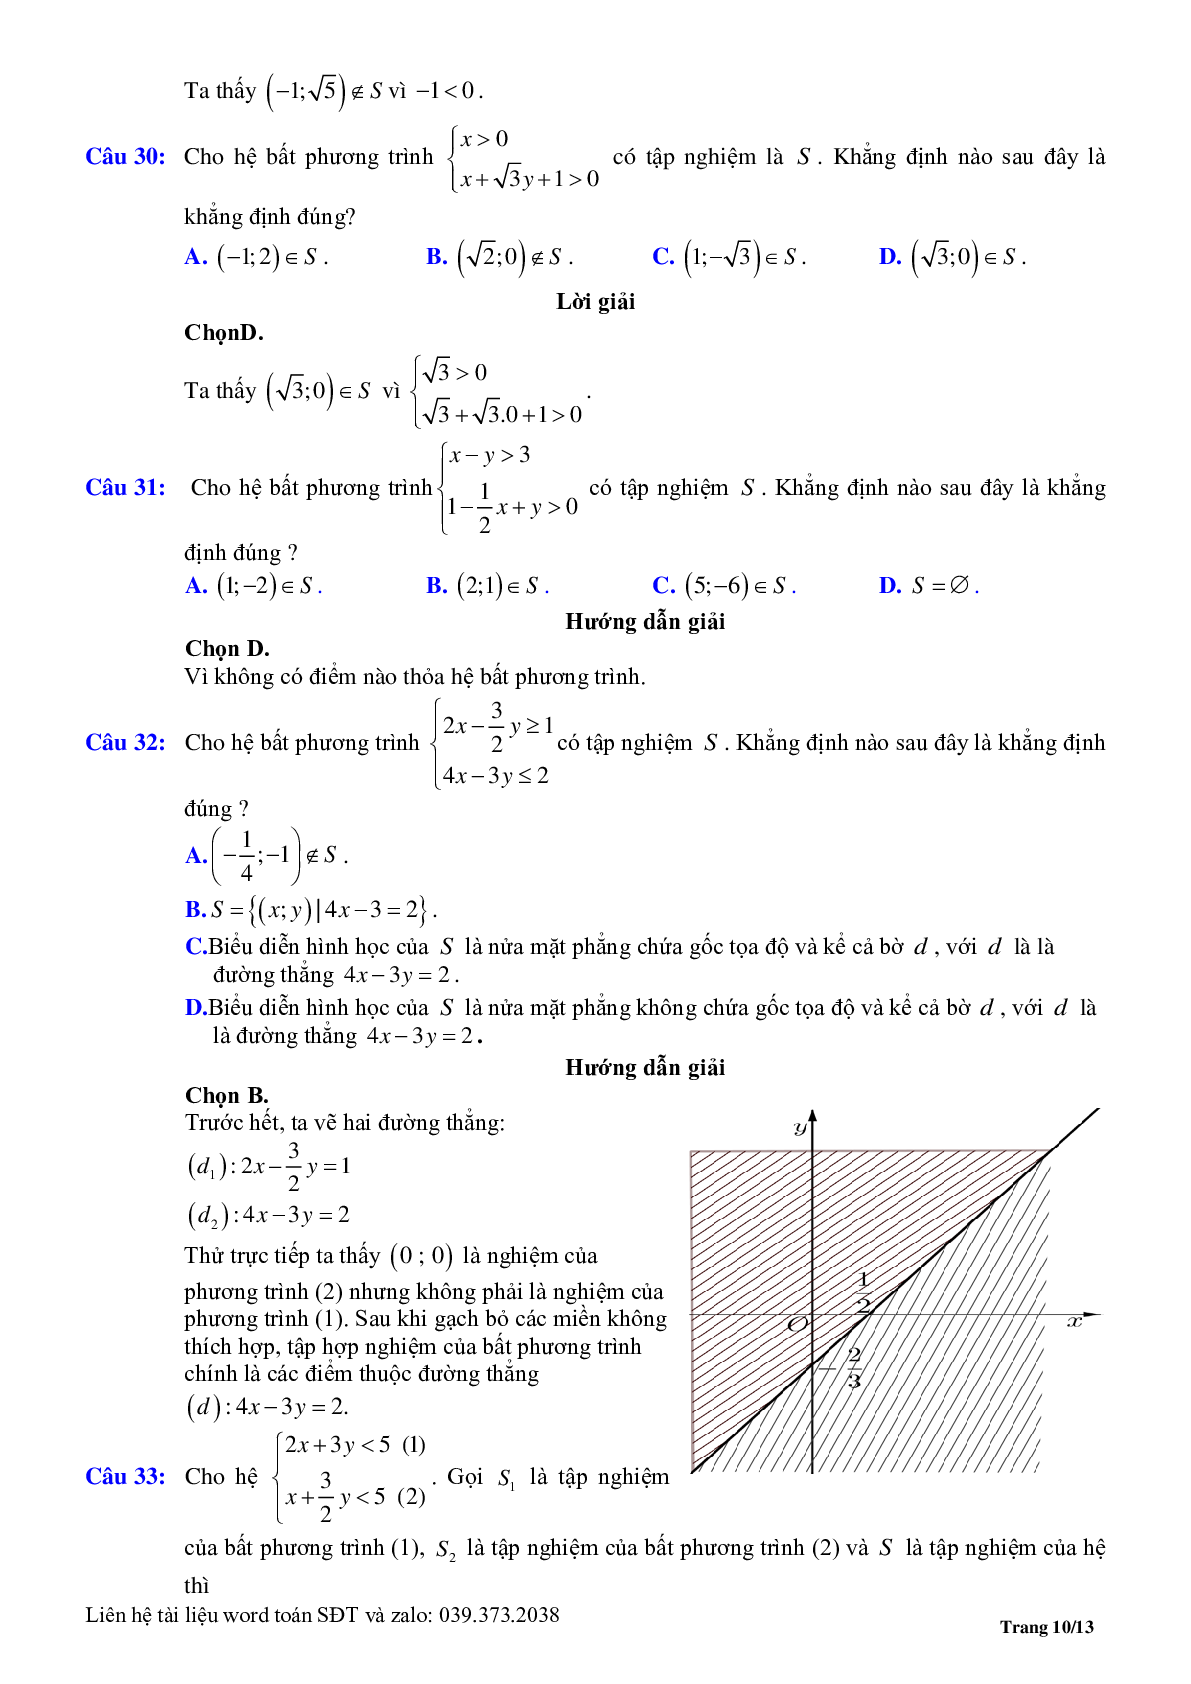 Chuyên đề bất phương trình, hệ phương trình bậc nhất hai ẩn (trang 10)